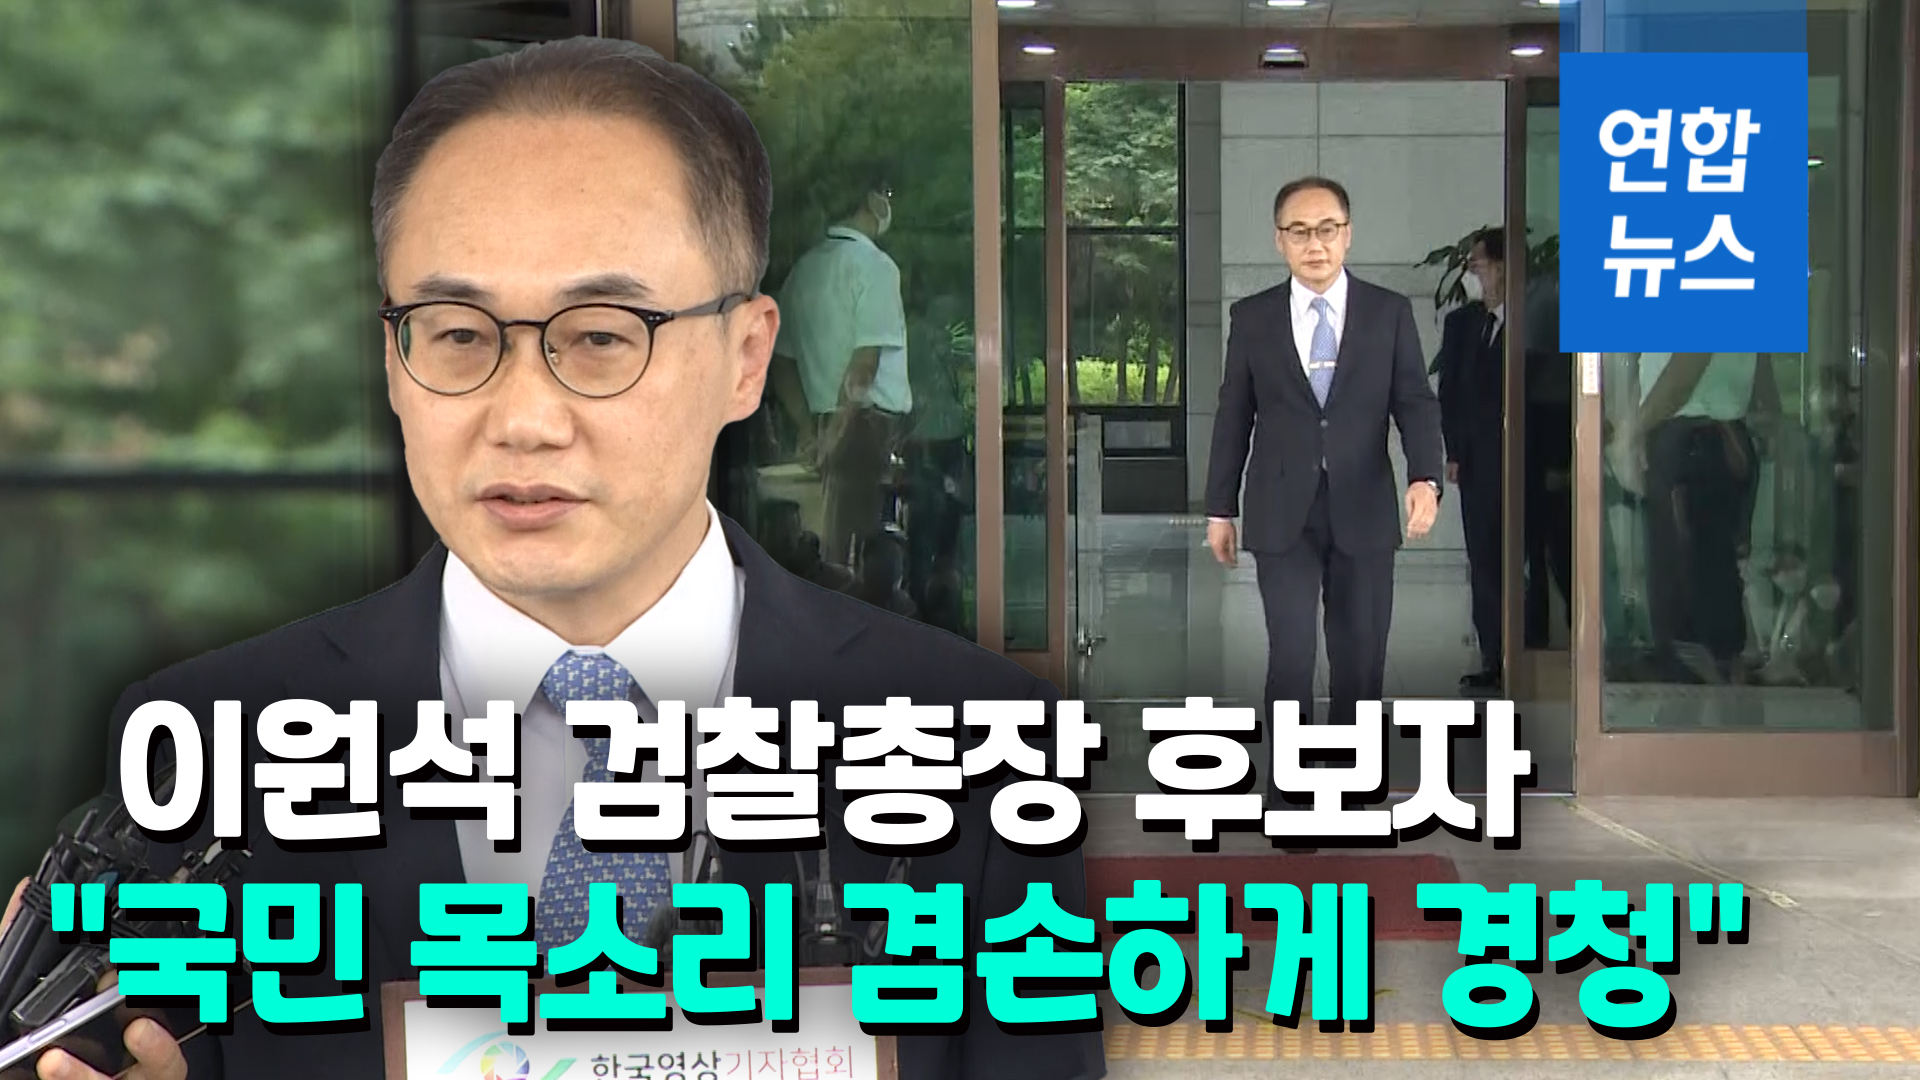 [영상] '尹라인' 이원석 "검찰 중립성이란 가치 소중히 지킬 것" | 연합뉴스